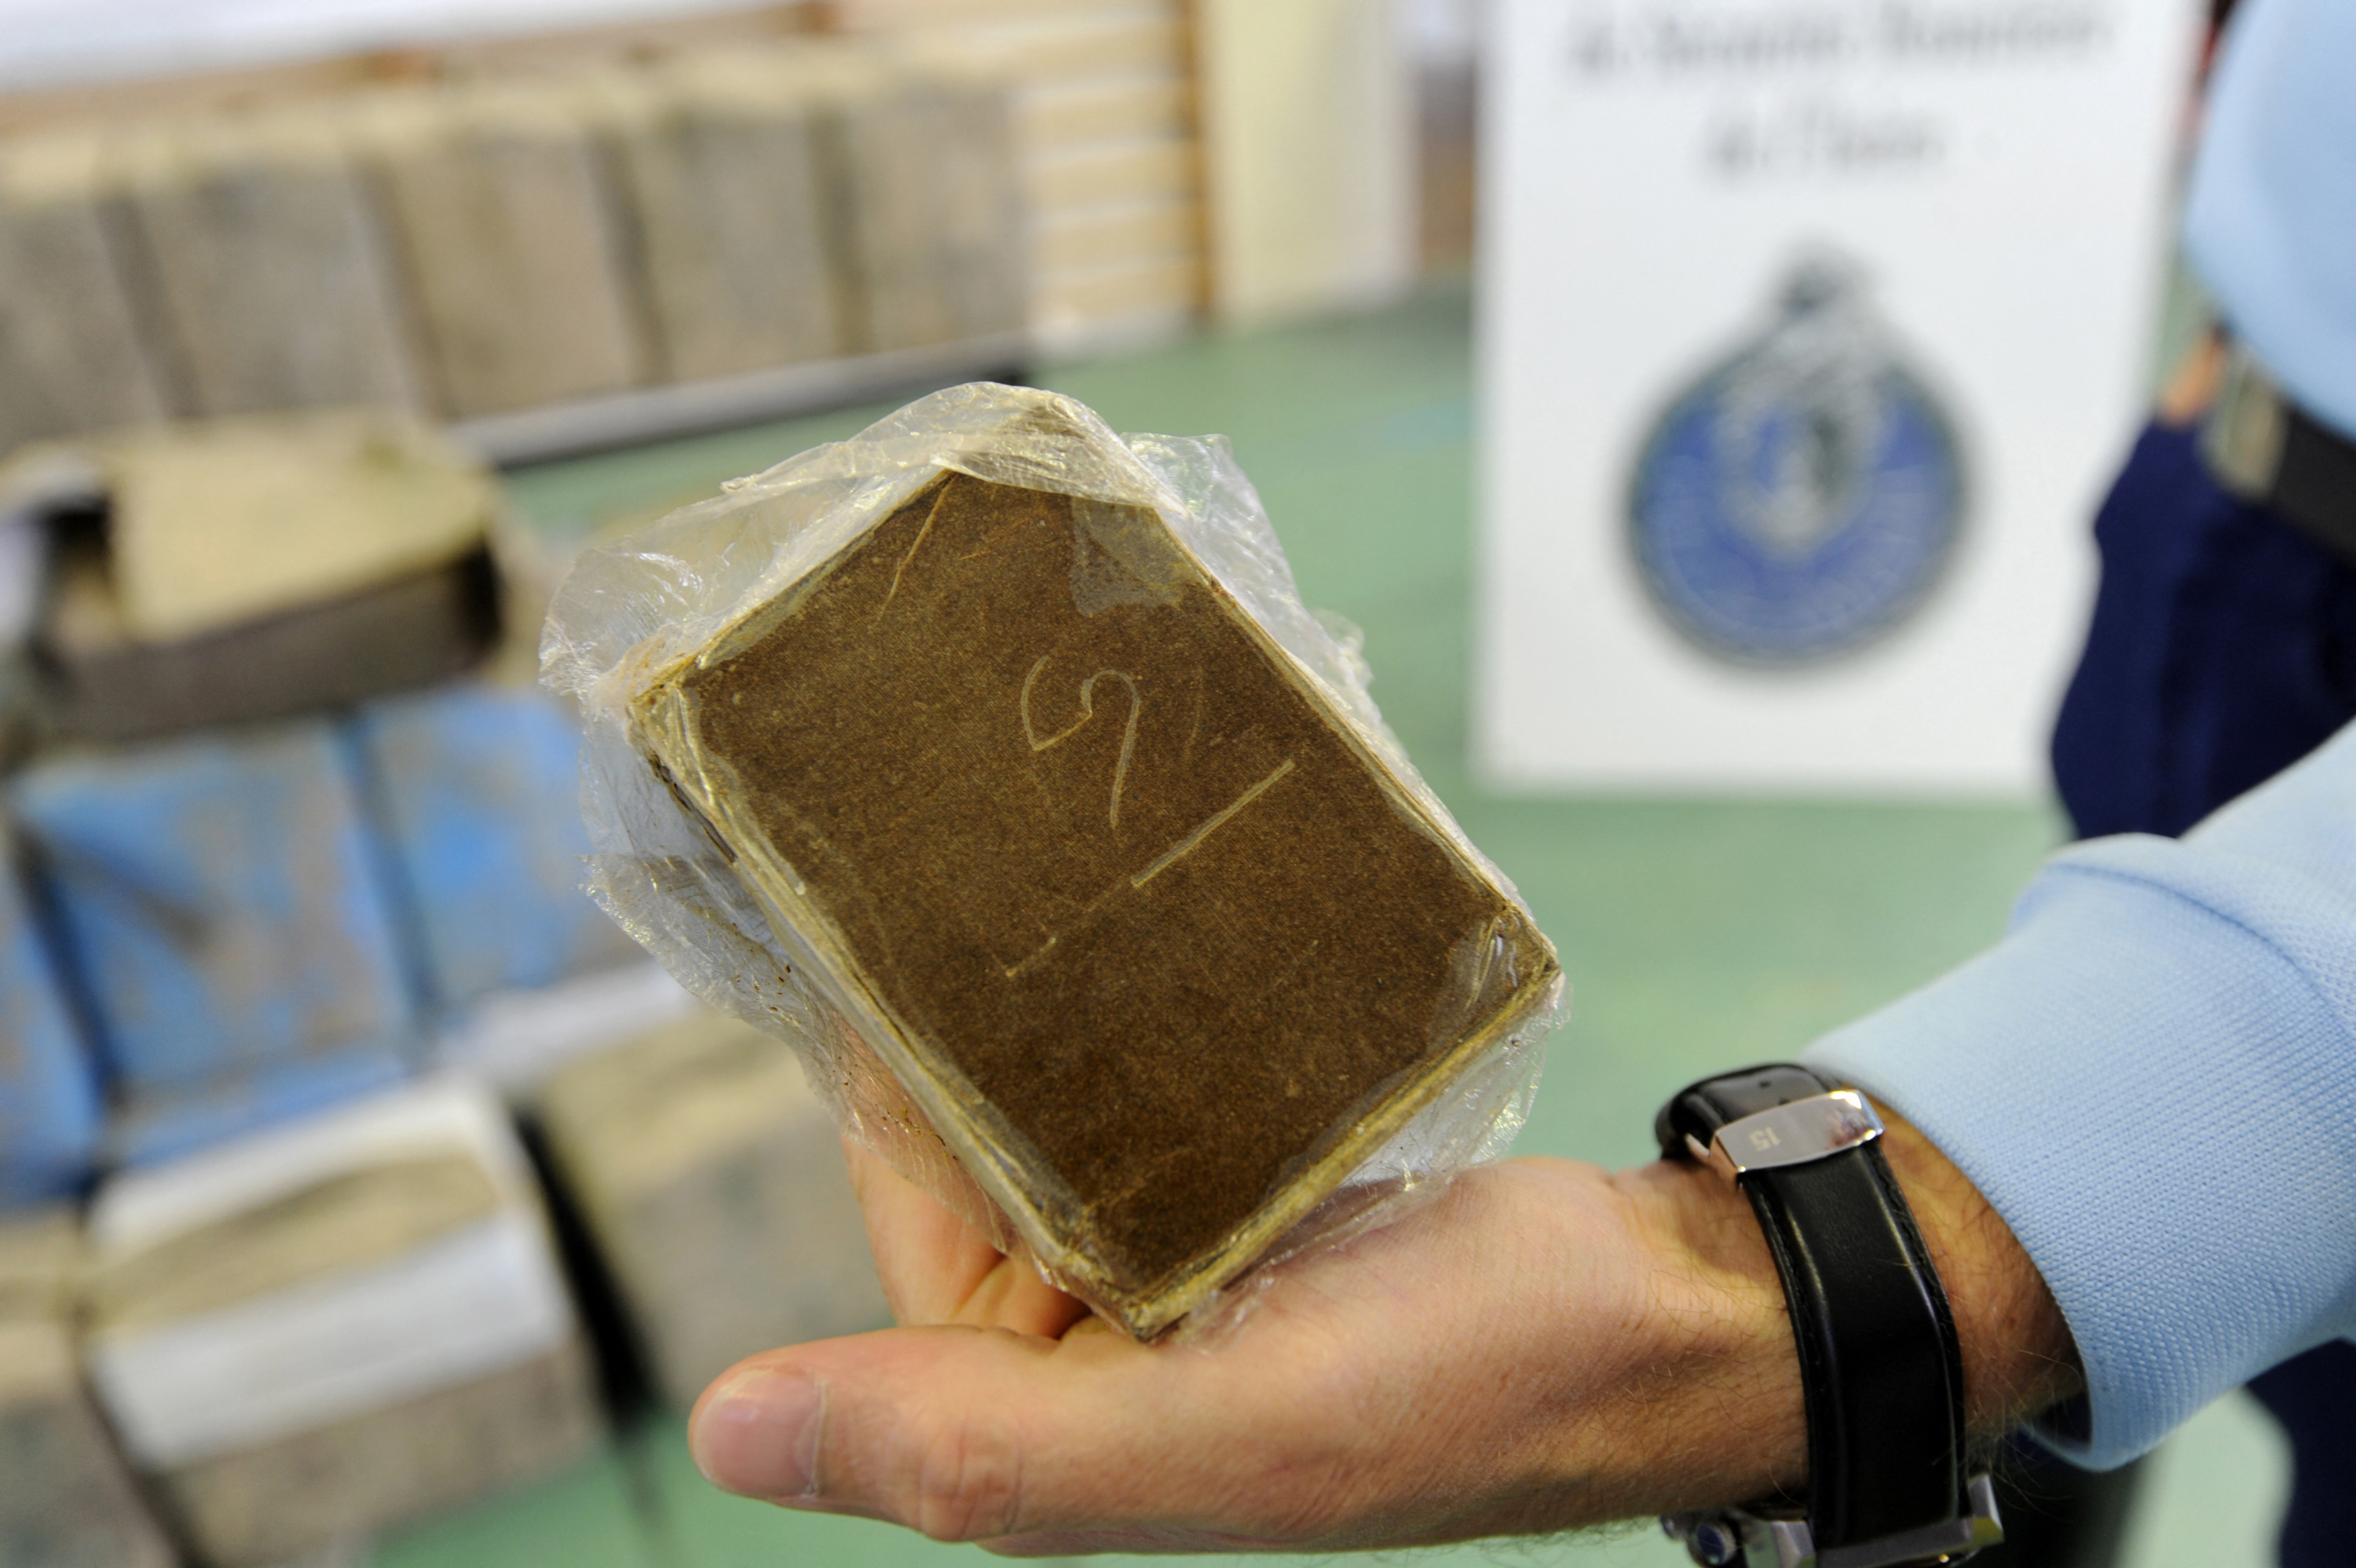 Près de Lyon : alertés par l'odeur, les employés d'un entrepôt DHL découvrent 800 kilos de cannabis